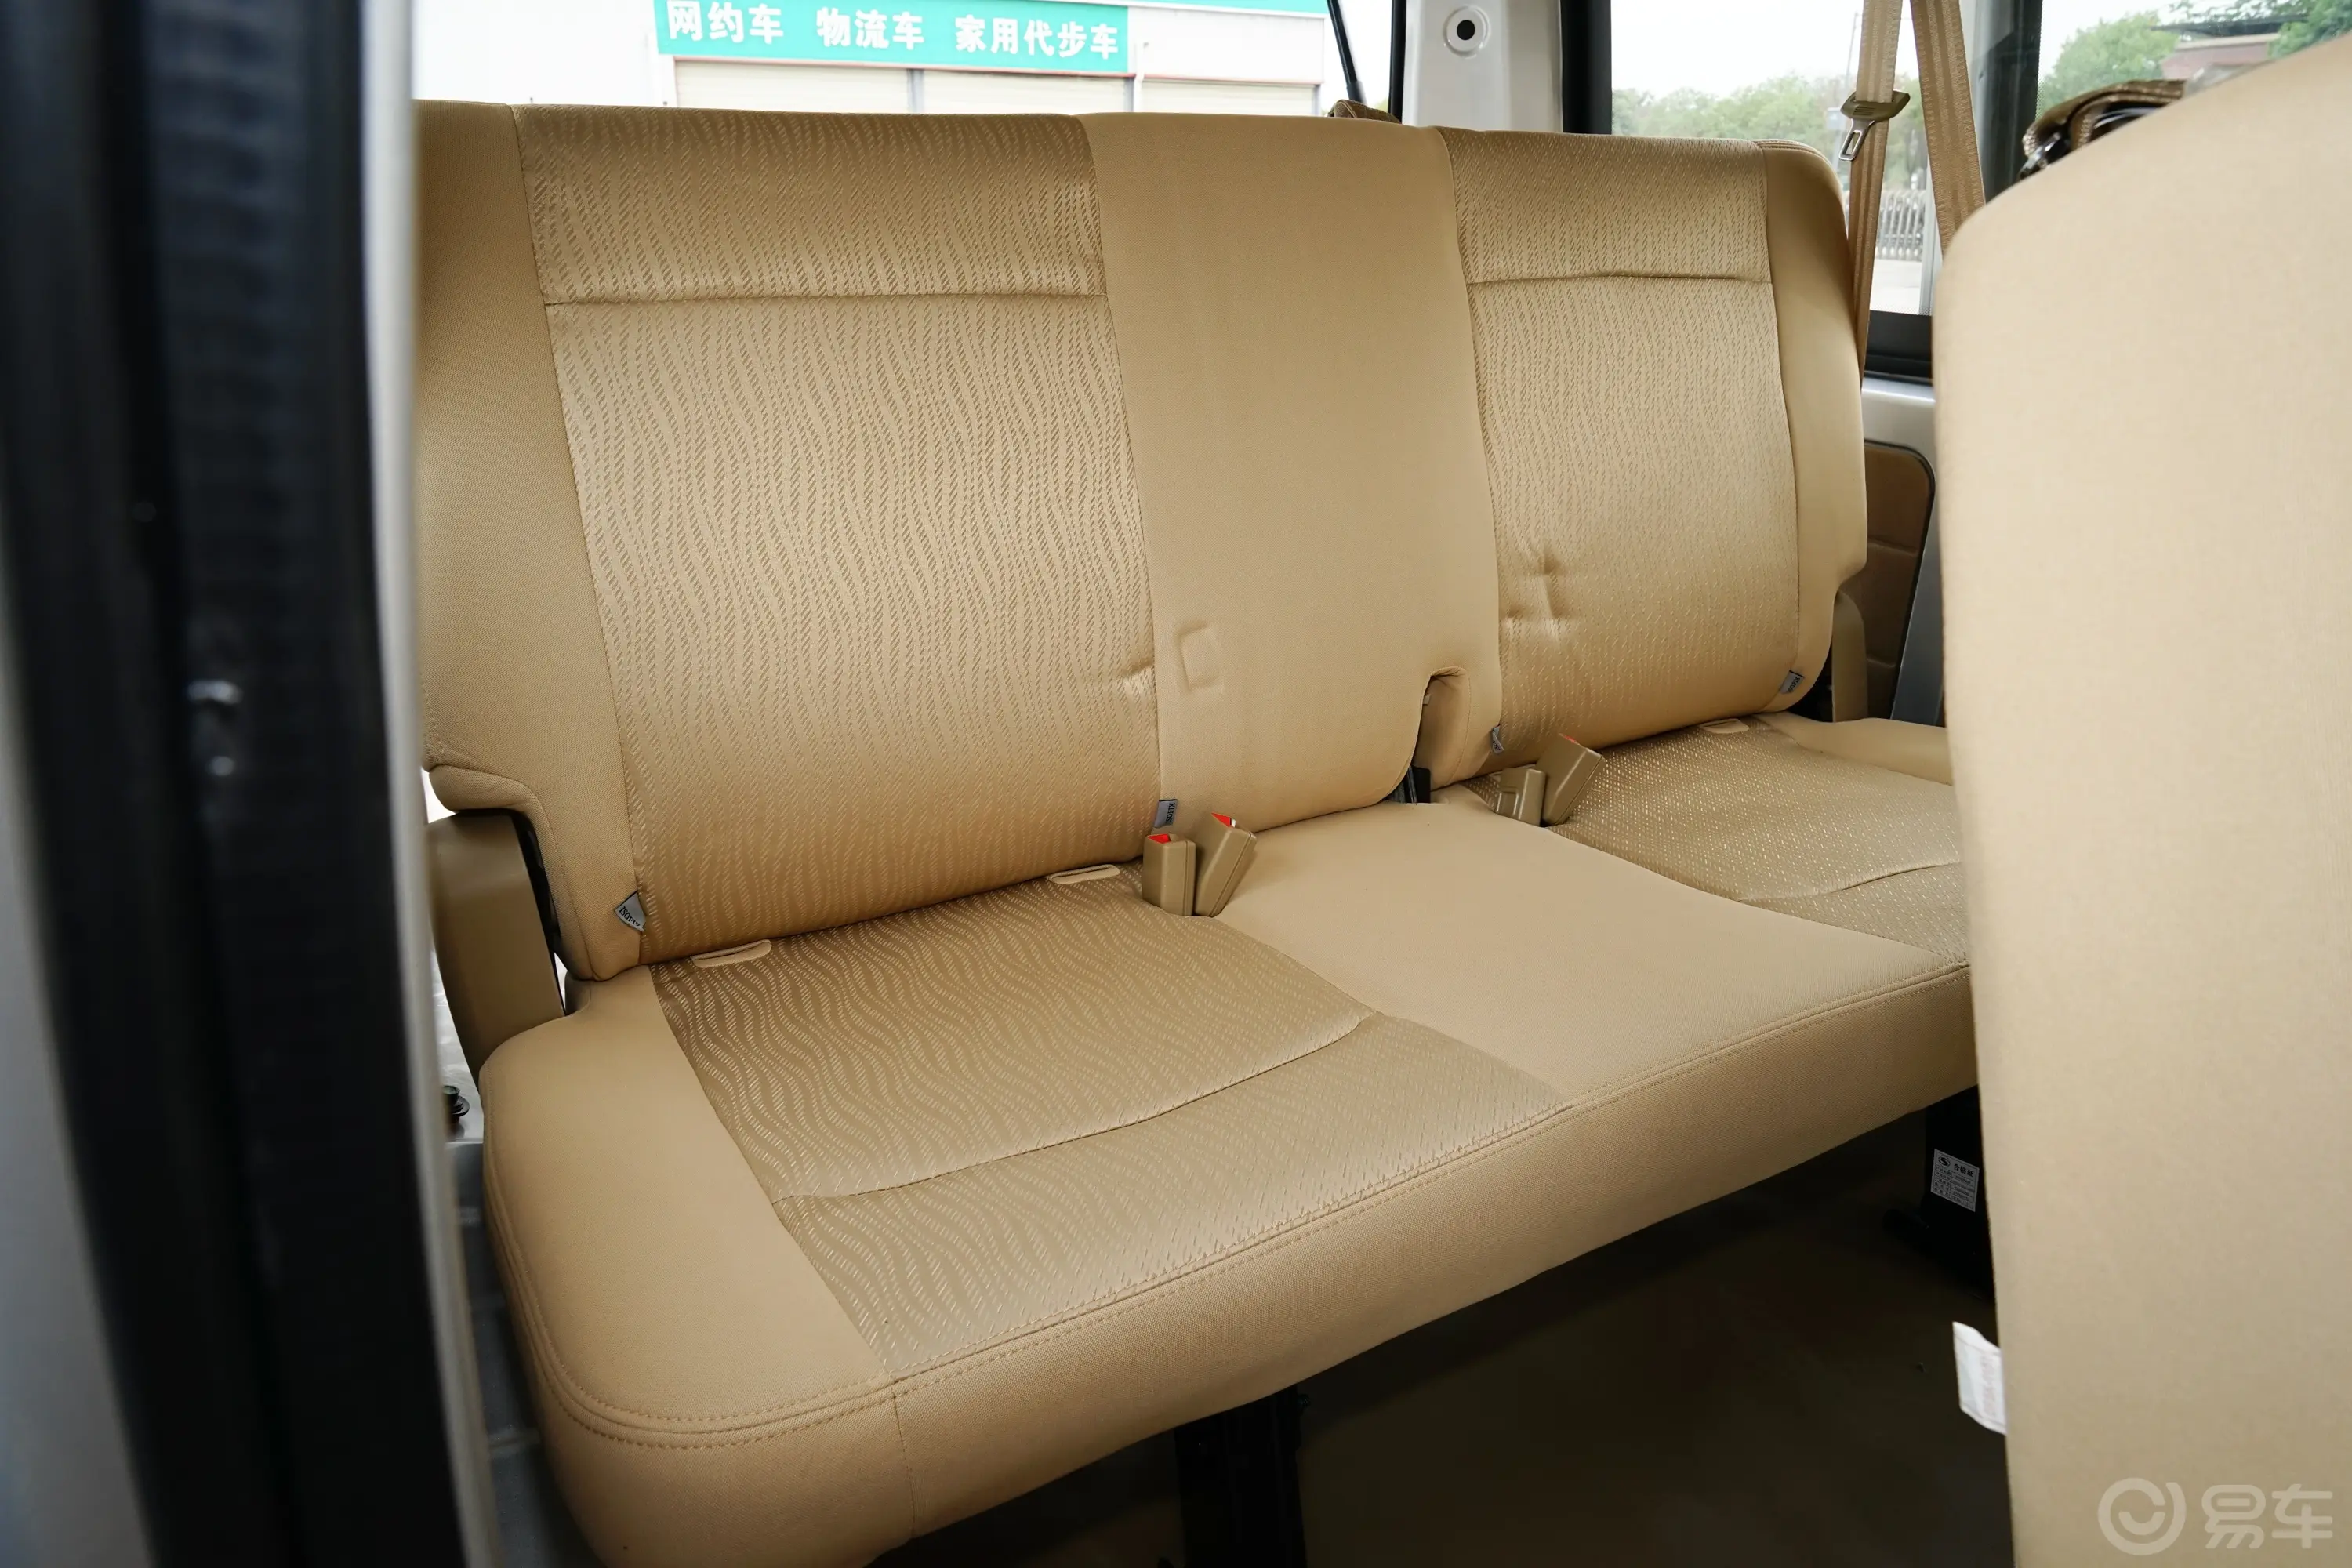 东风小康C361.5L 手动基本型第三排座椅